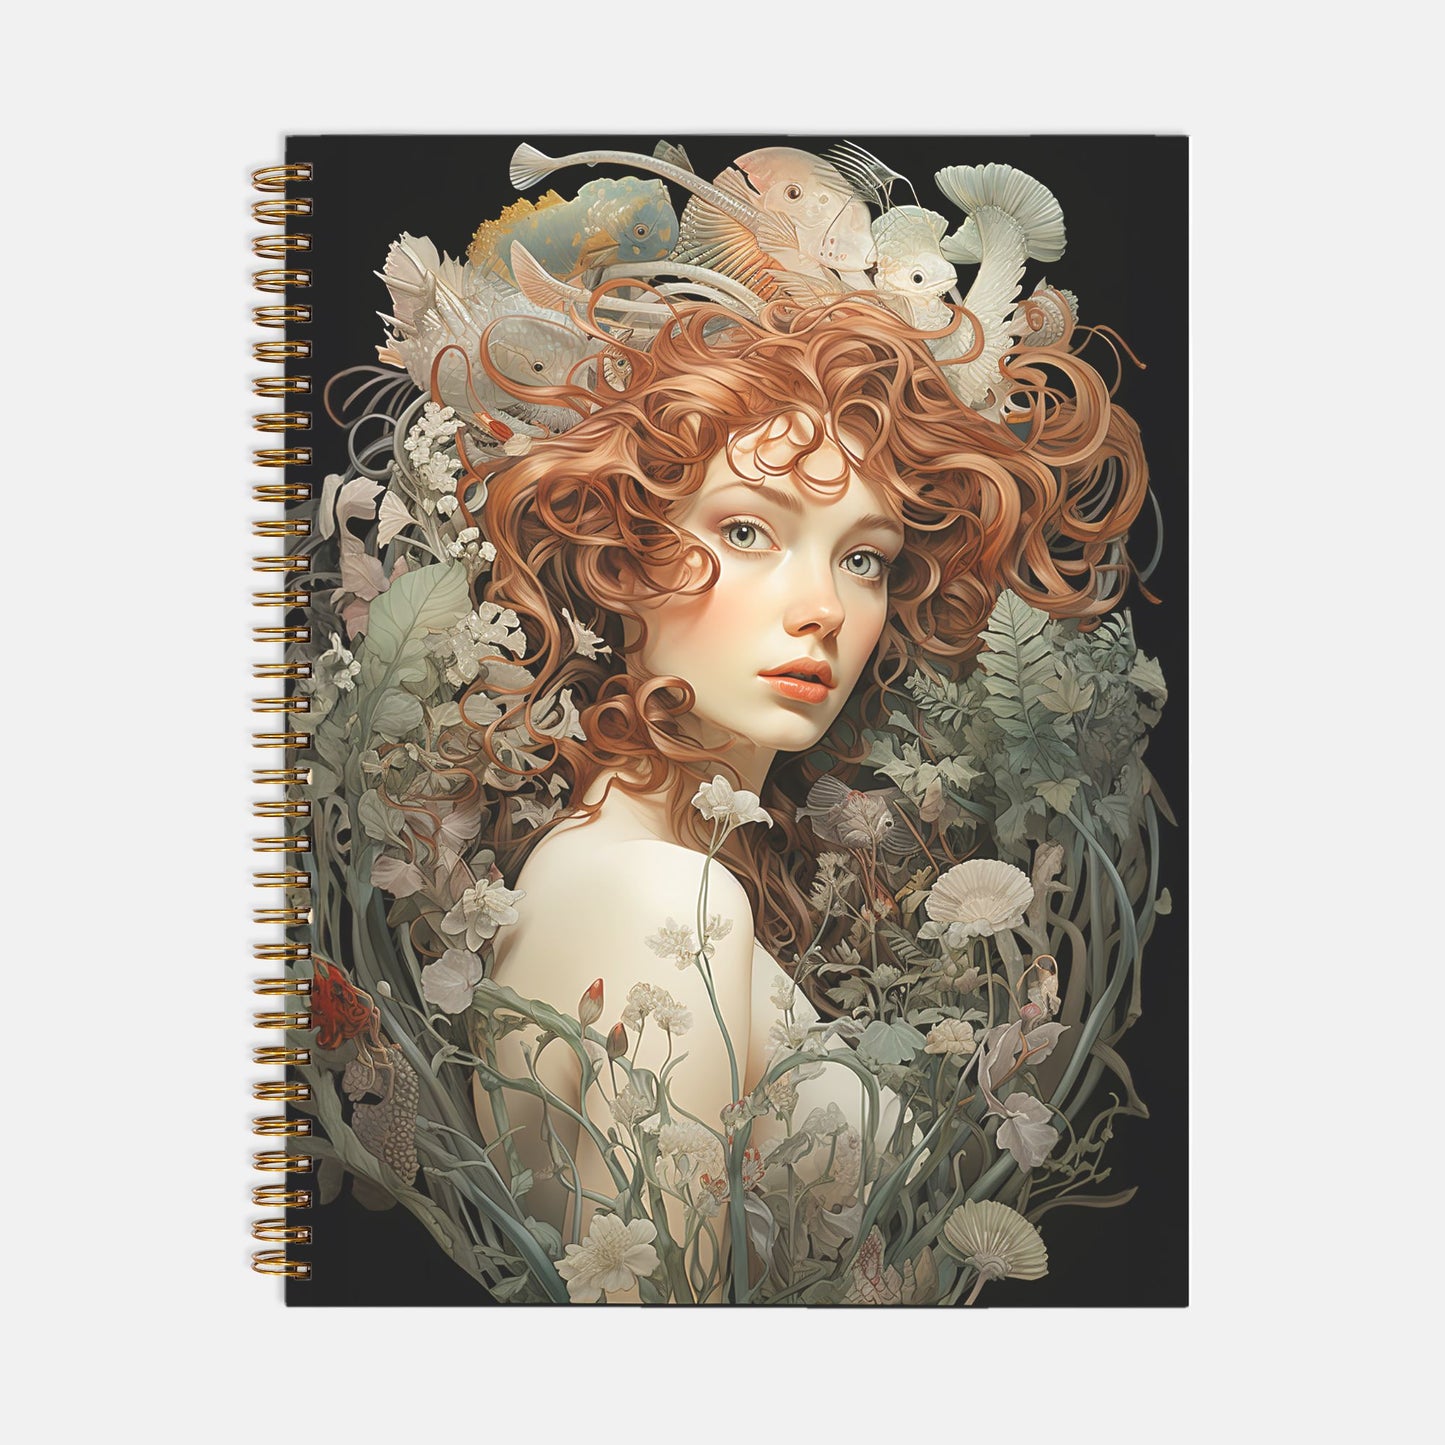 Sea Goddess Journal Notebook Hardcover Spiral 8.5 x 11